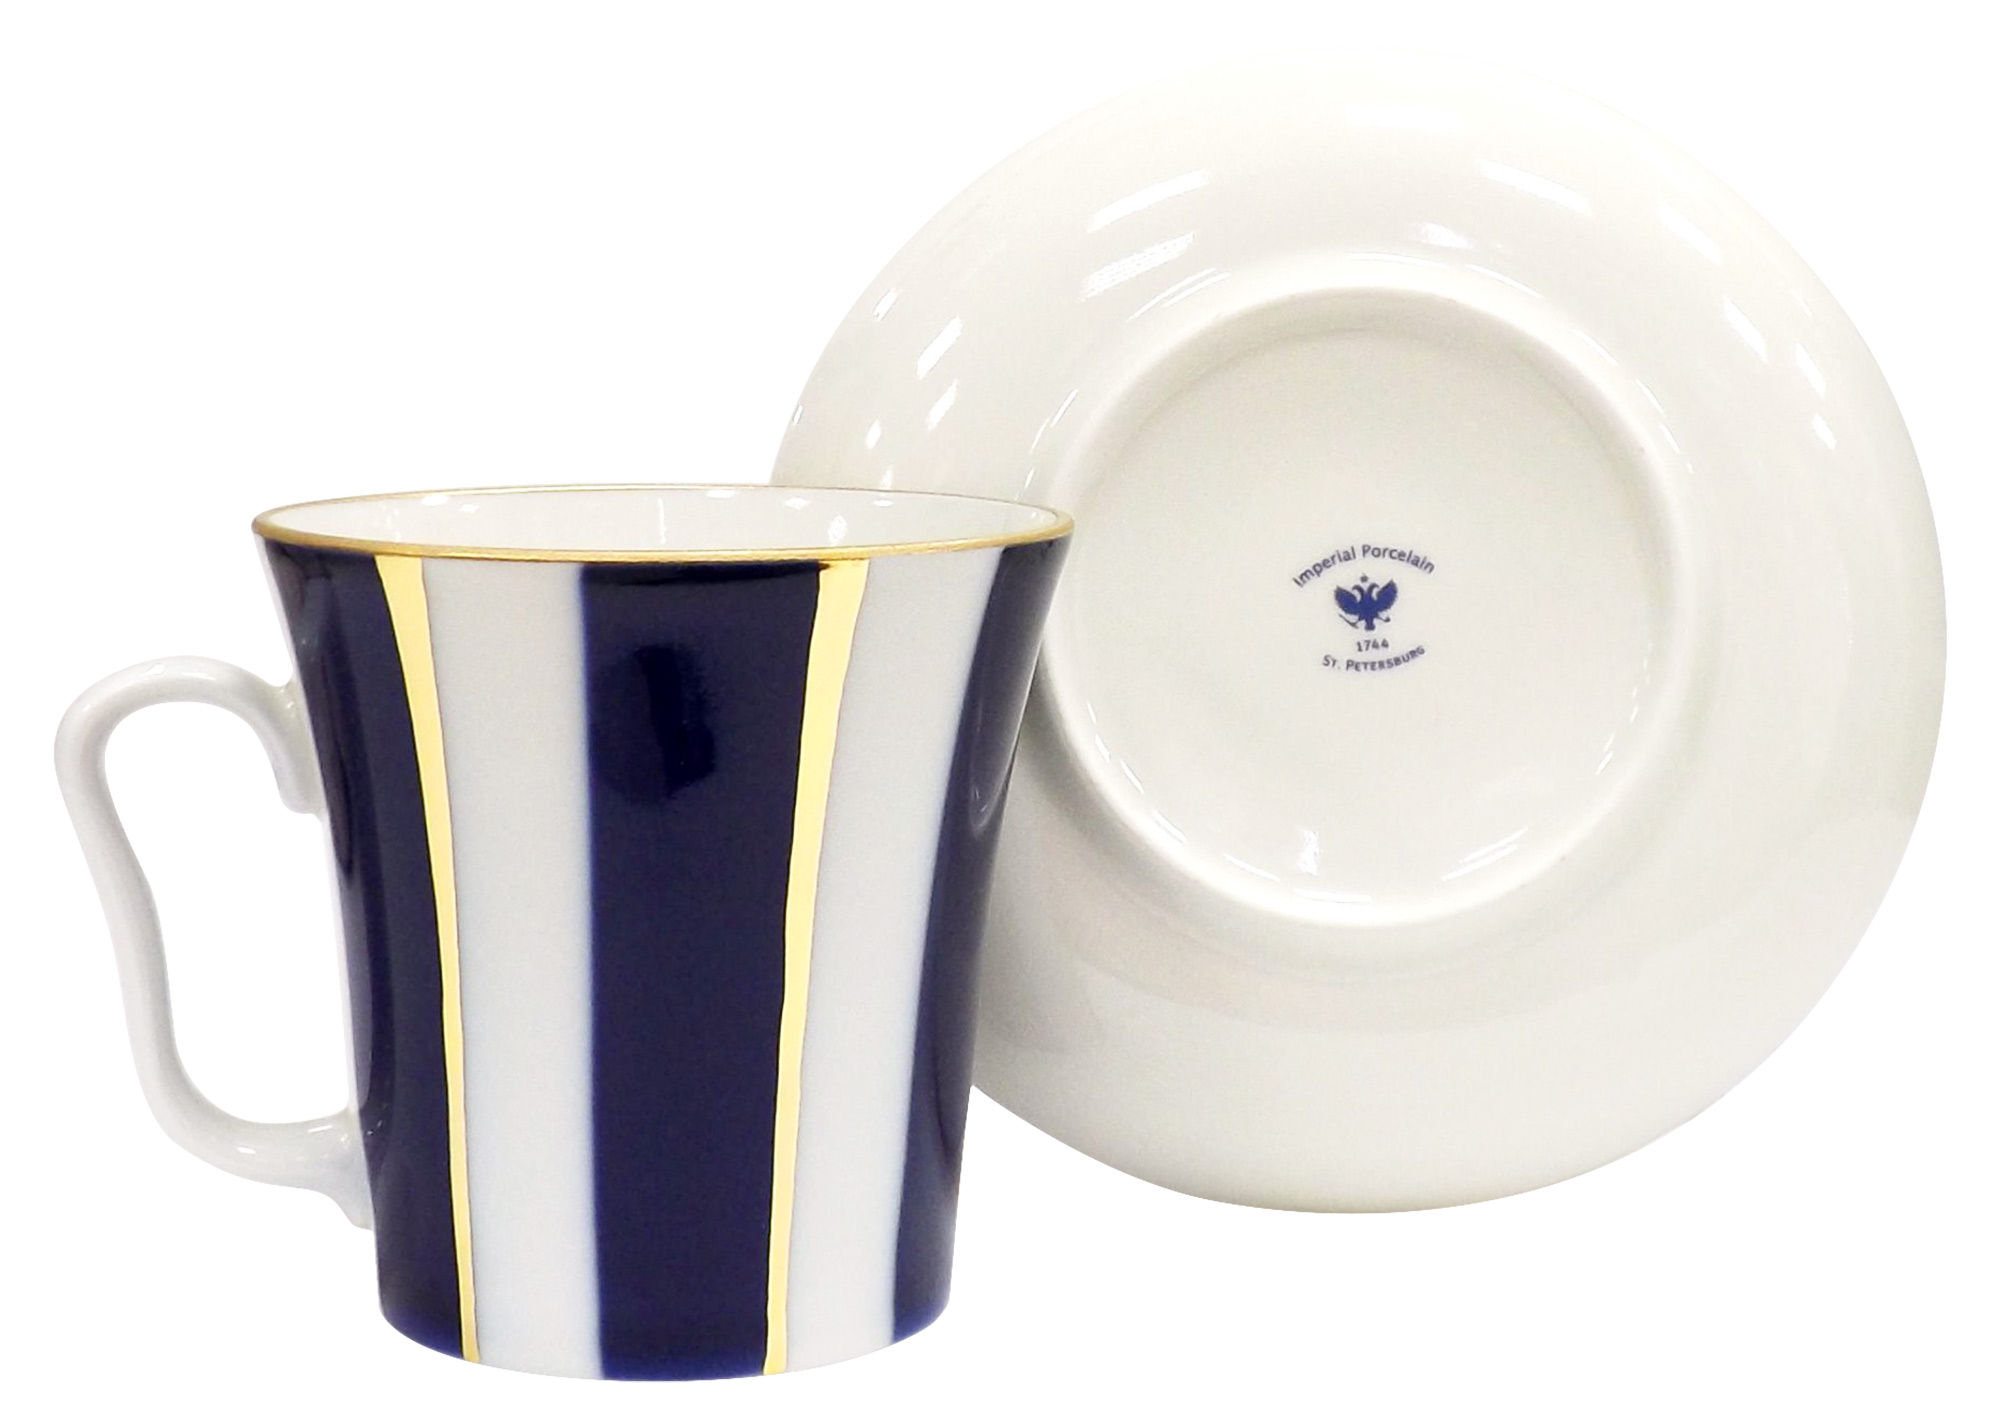 Buy Cobalt Stripes Mug and Saucer at GoldenCockerel.com